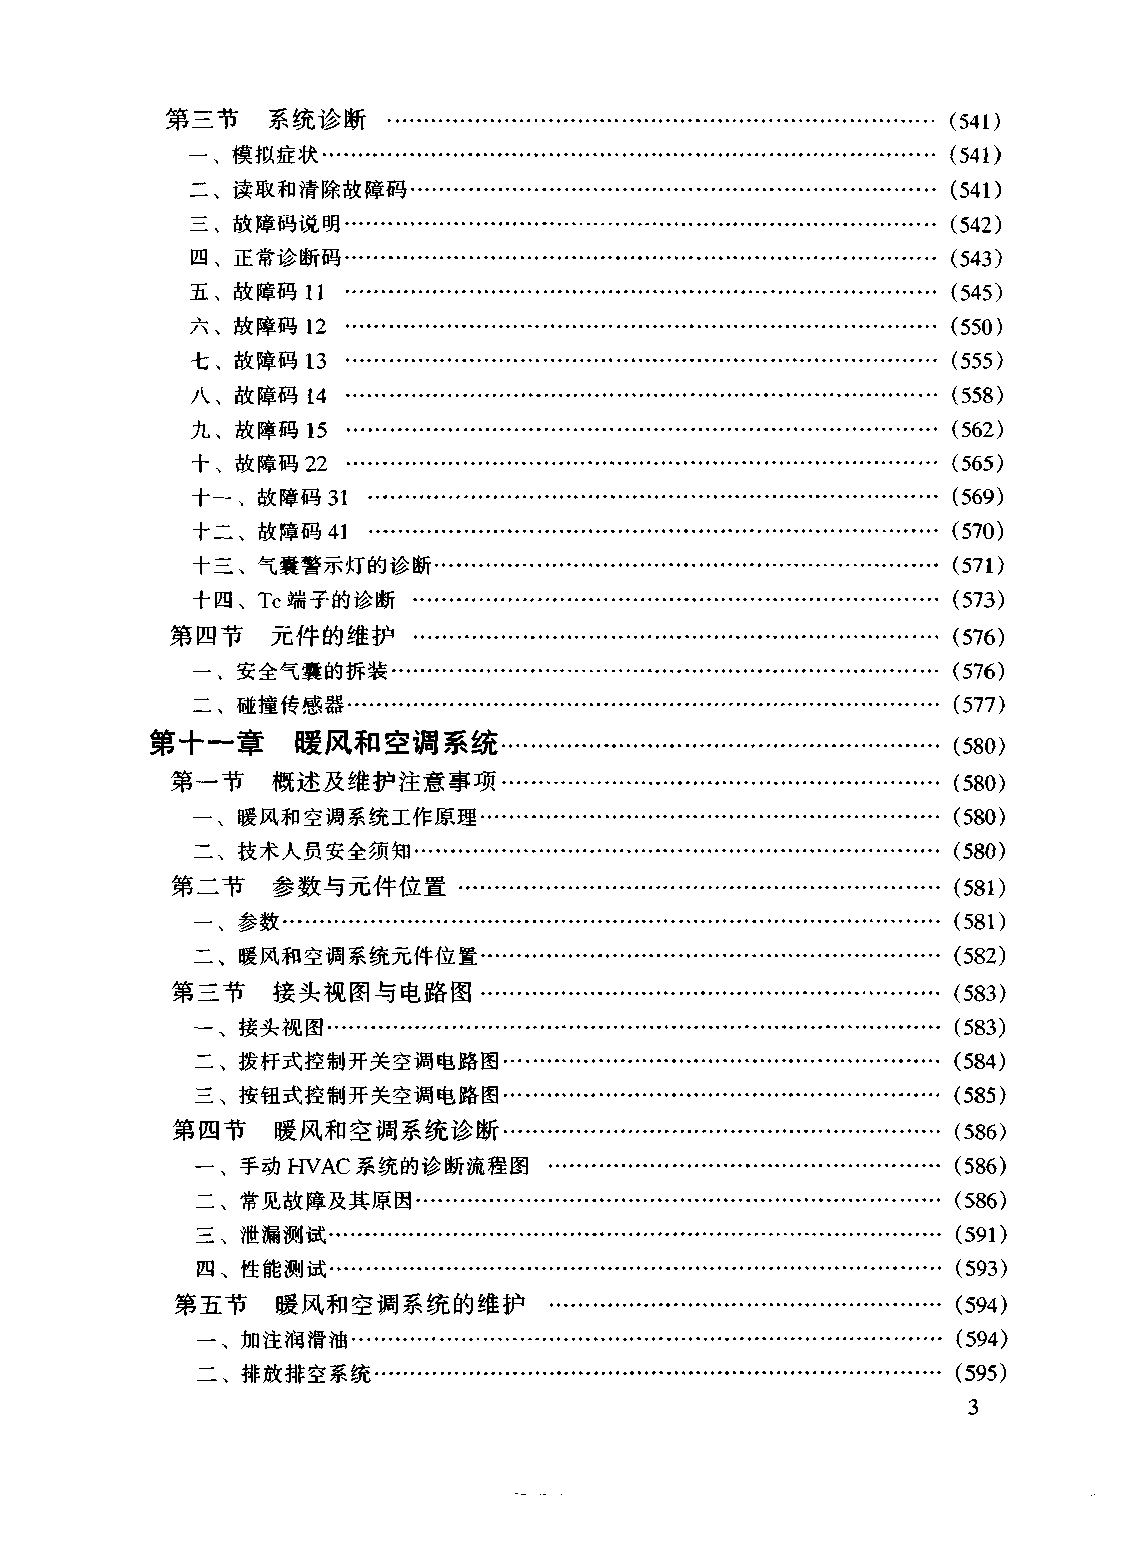 佳美维修手册 粤科1999D (2).pdf-第8页.png